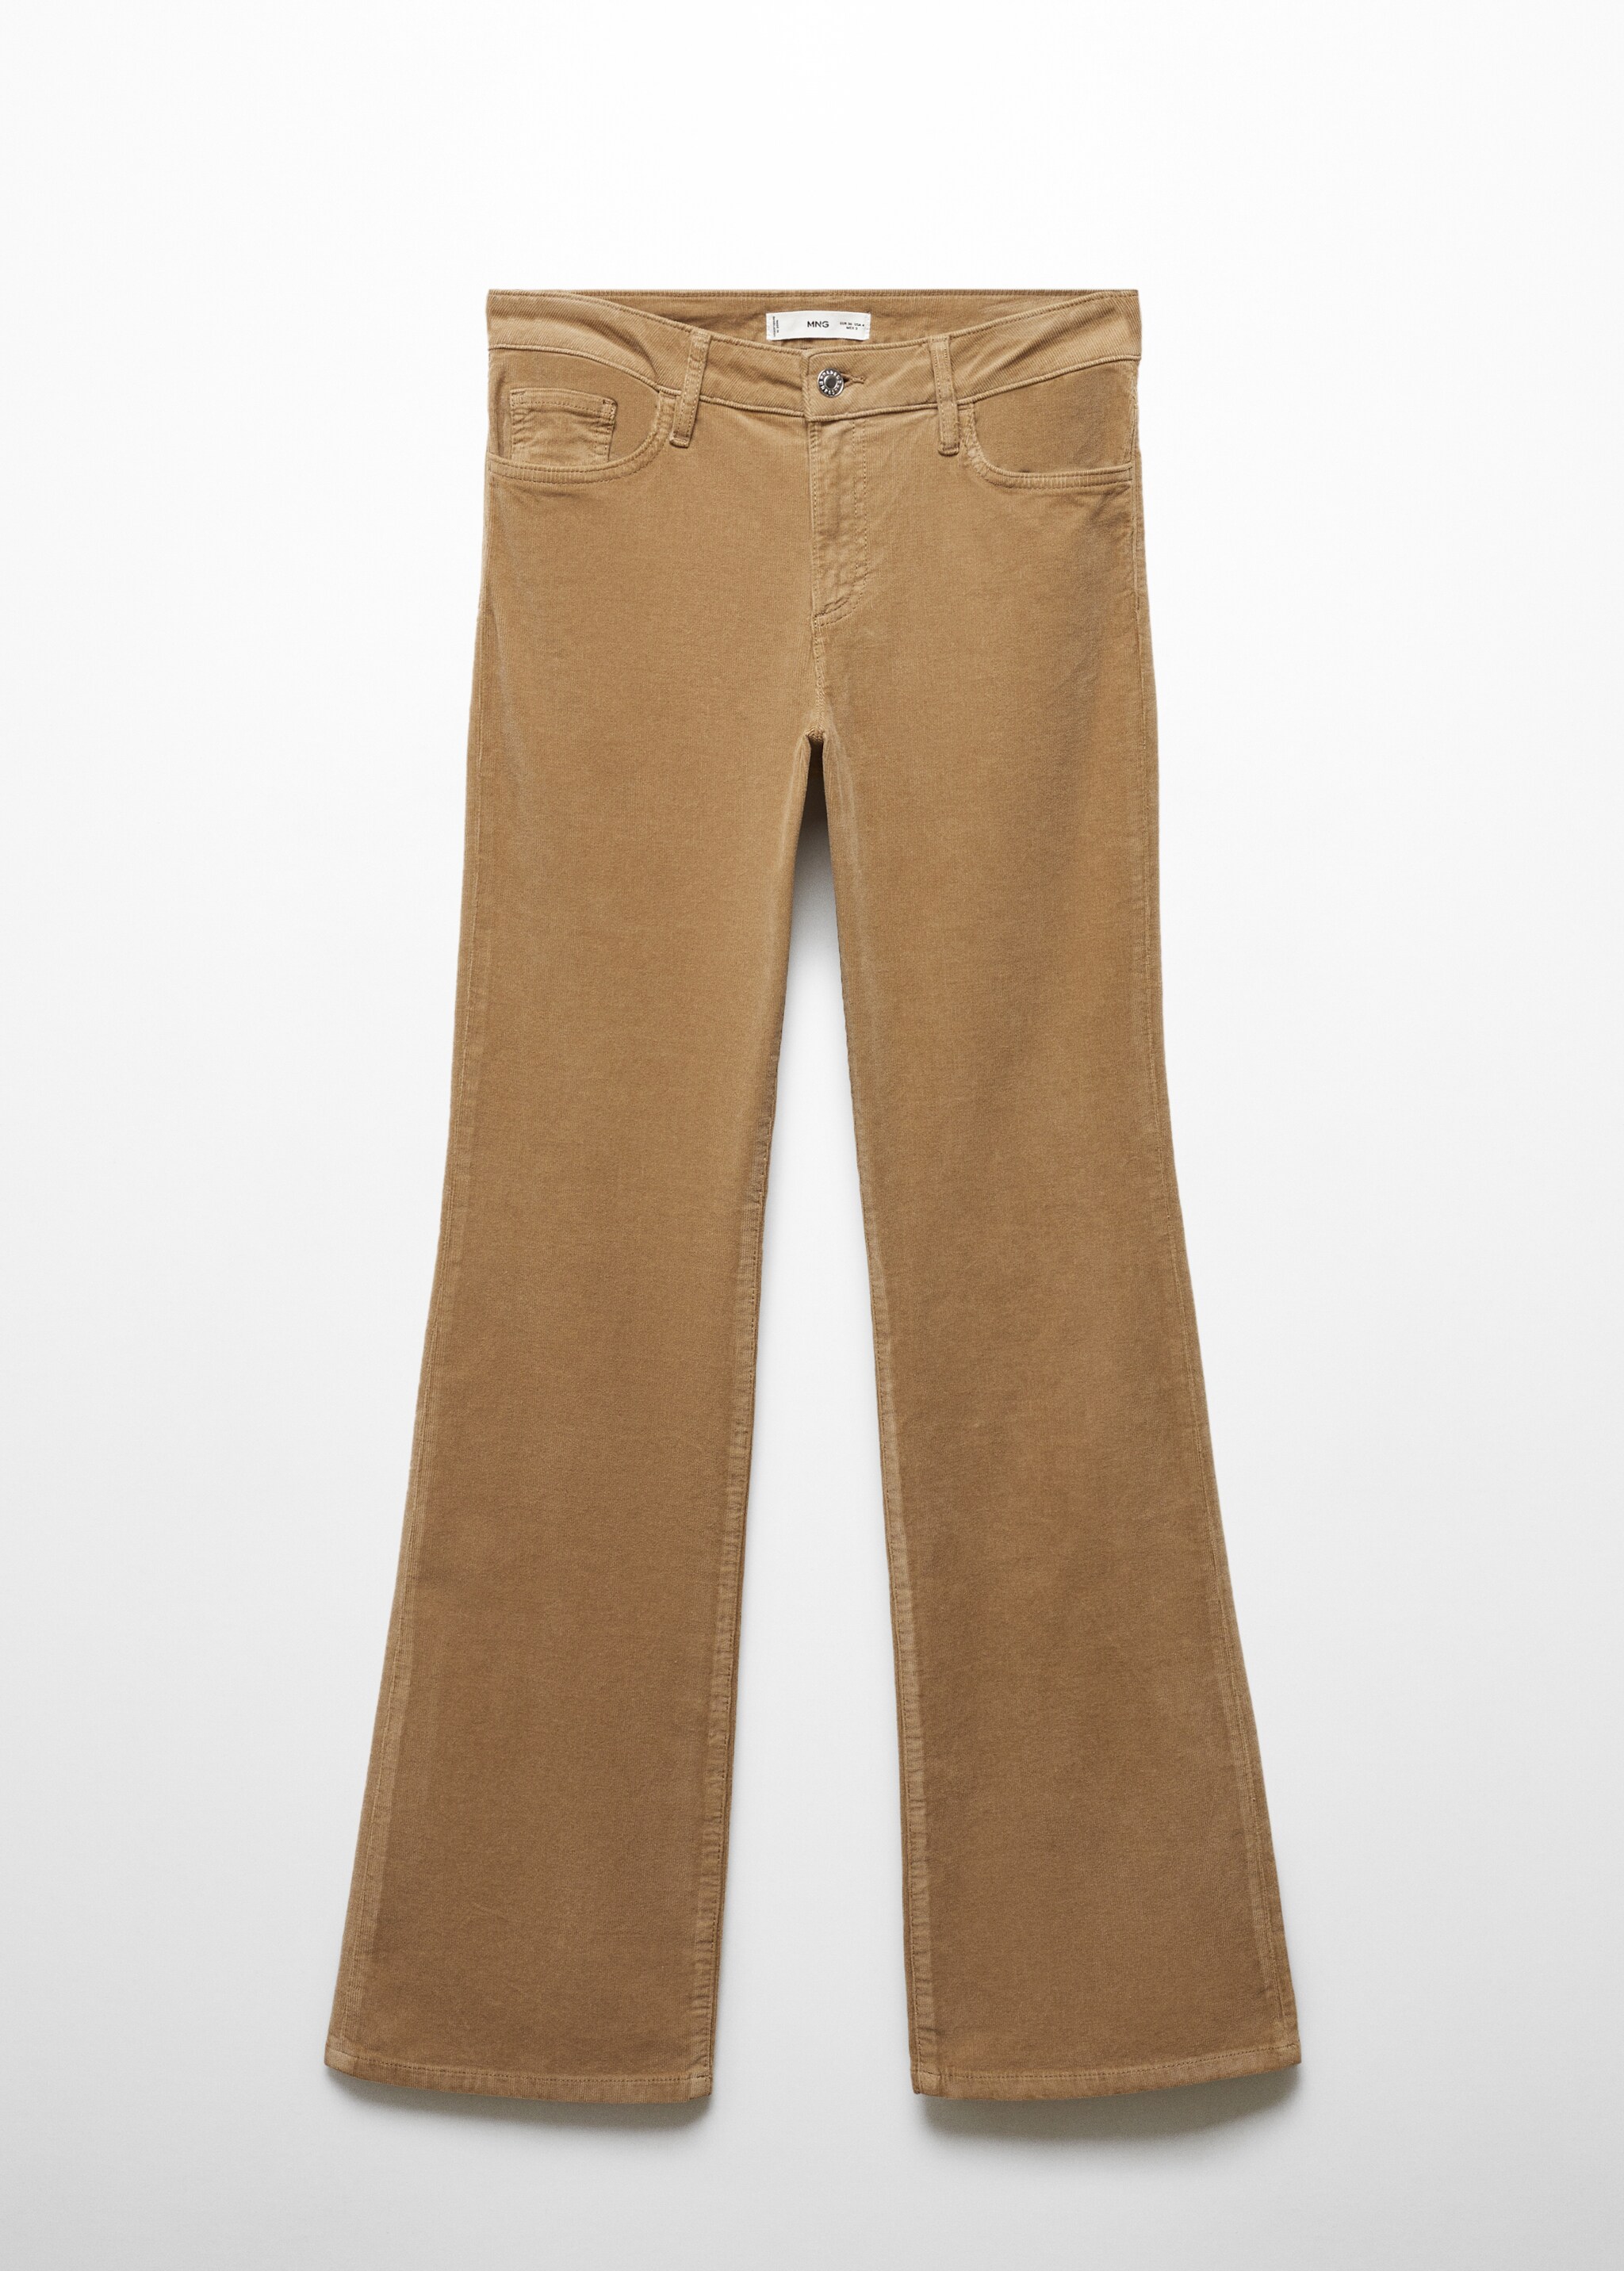 Pantalon flare taille normale velours côtelé - Article sans modèle